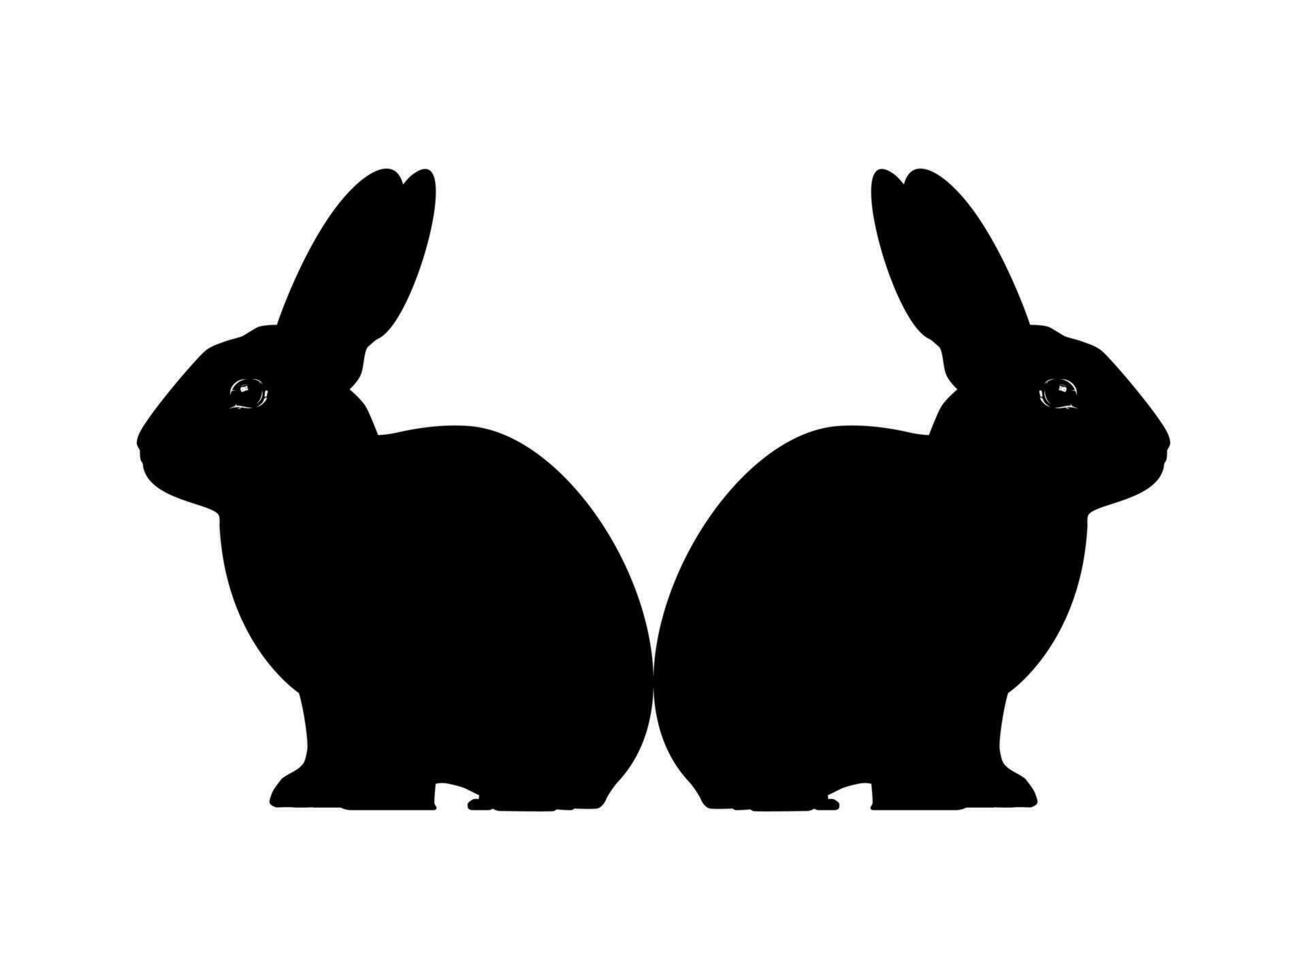 paar- van de konijn of konijn of haas silhouet voor kunst illustratie, logo type, pictogram, appjes, website of grafisch ontwerp element. vector illustratie